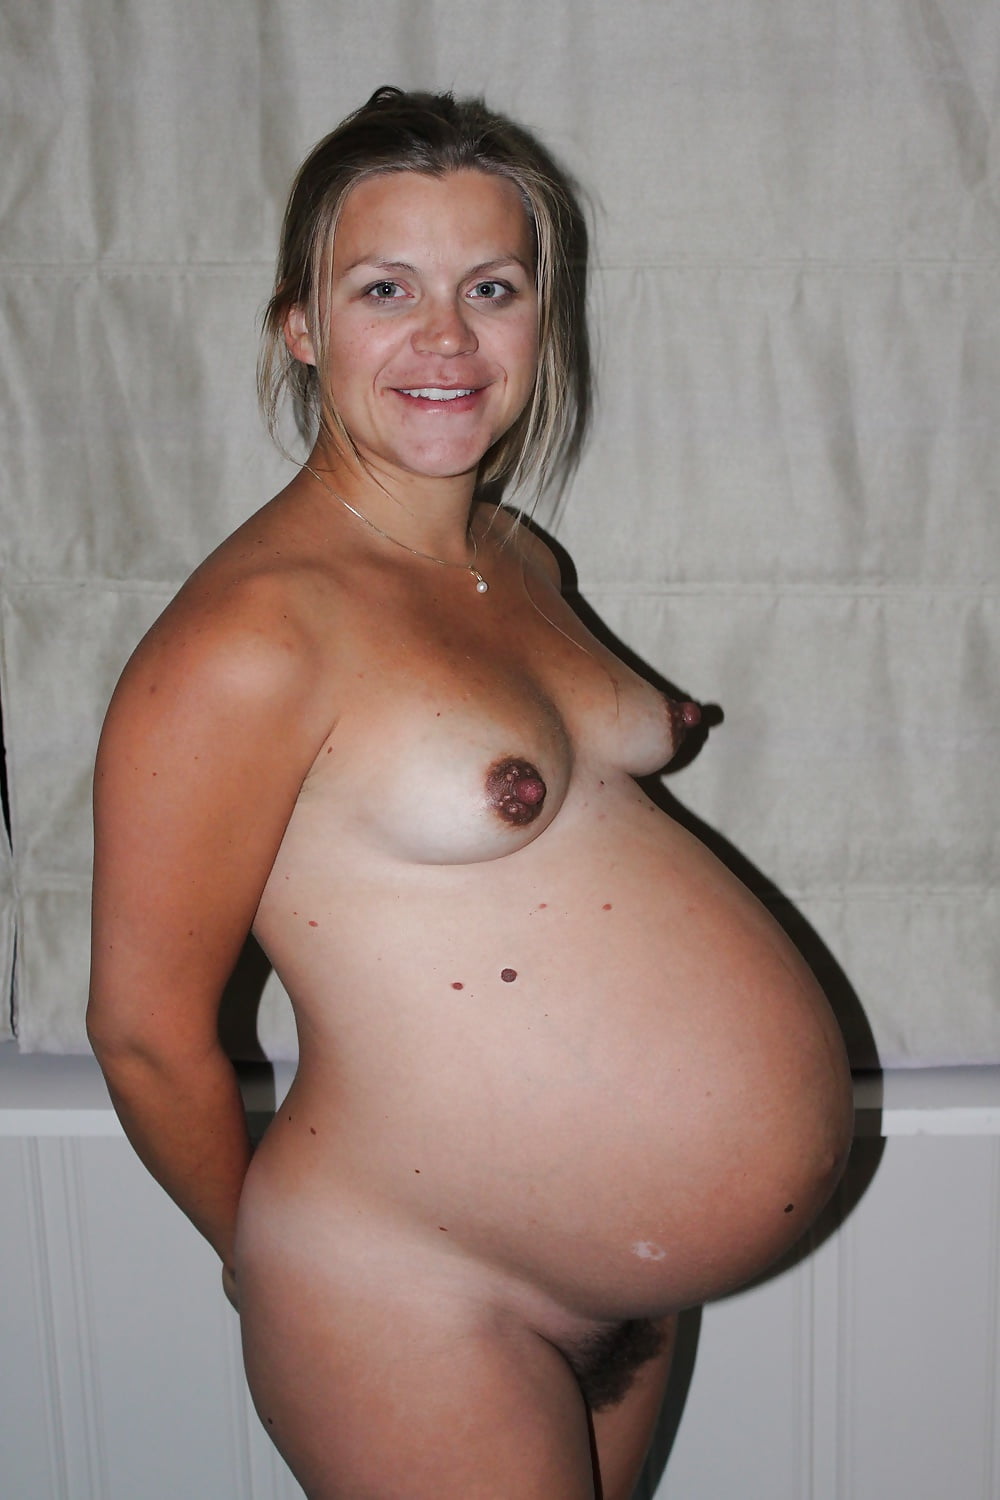 I love pregnant women - 31 Pics xHamster